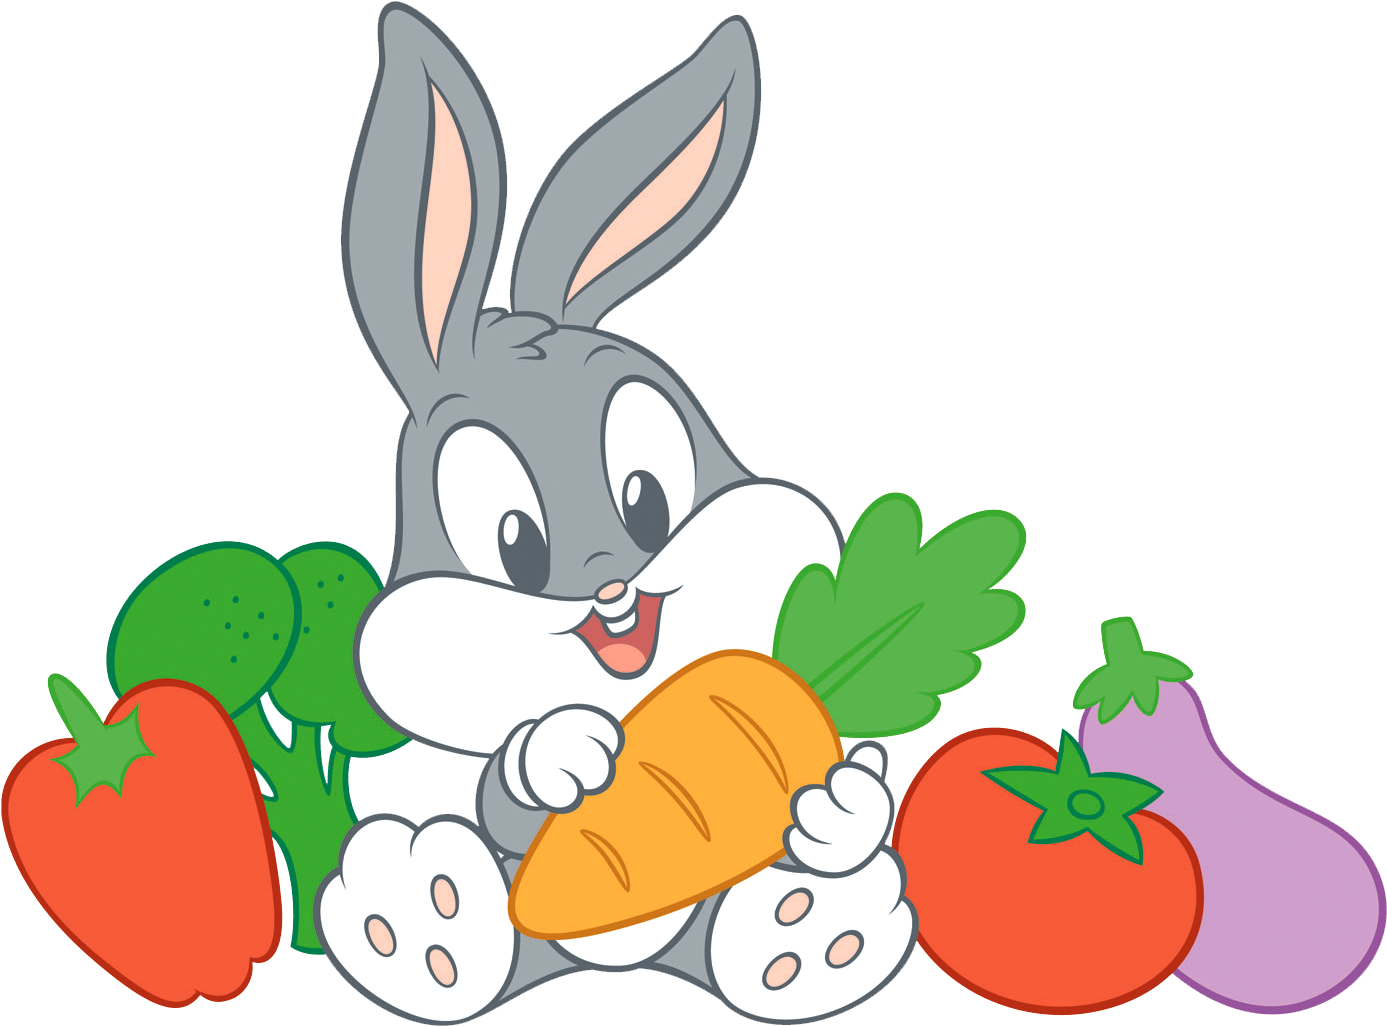 Найди 3 зайца. Заяц с морковкой. Заяц мультяшный. Мульлятшни заяц. Зайчик с морковкой.